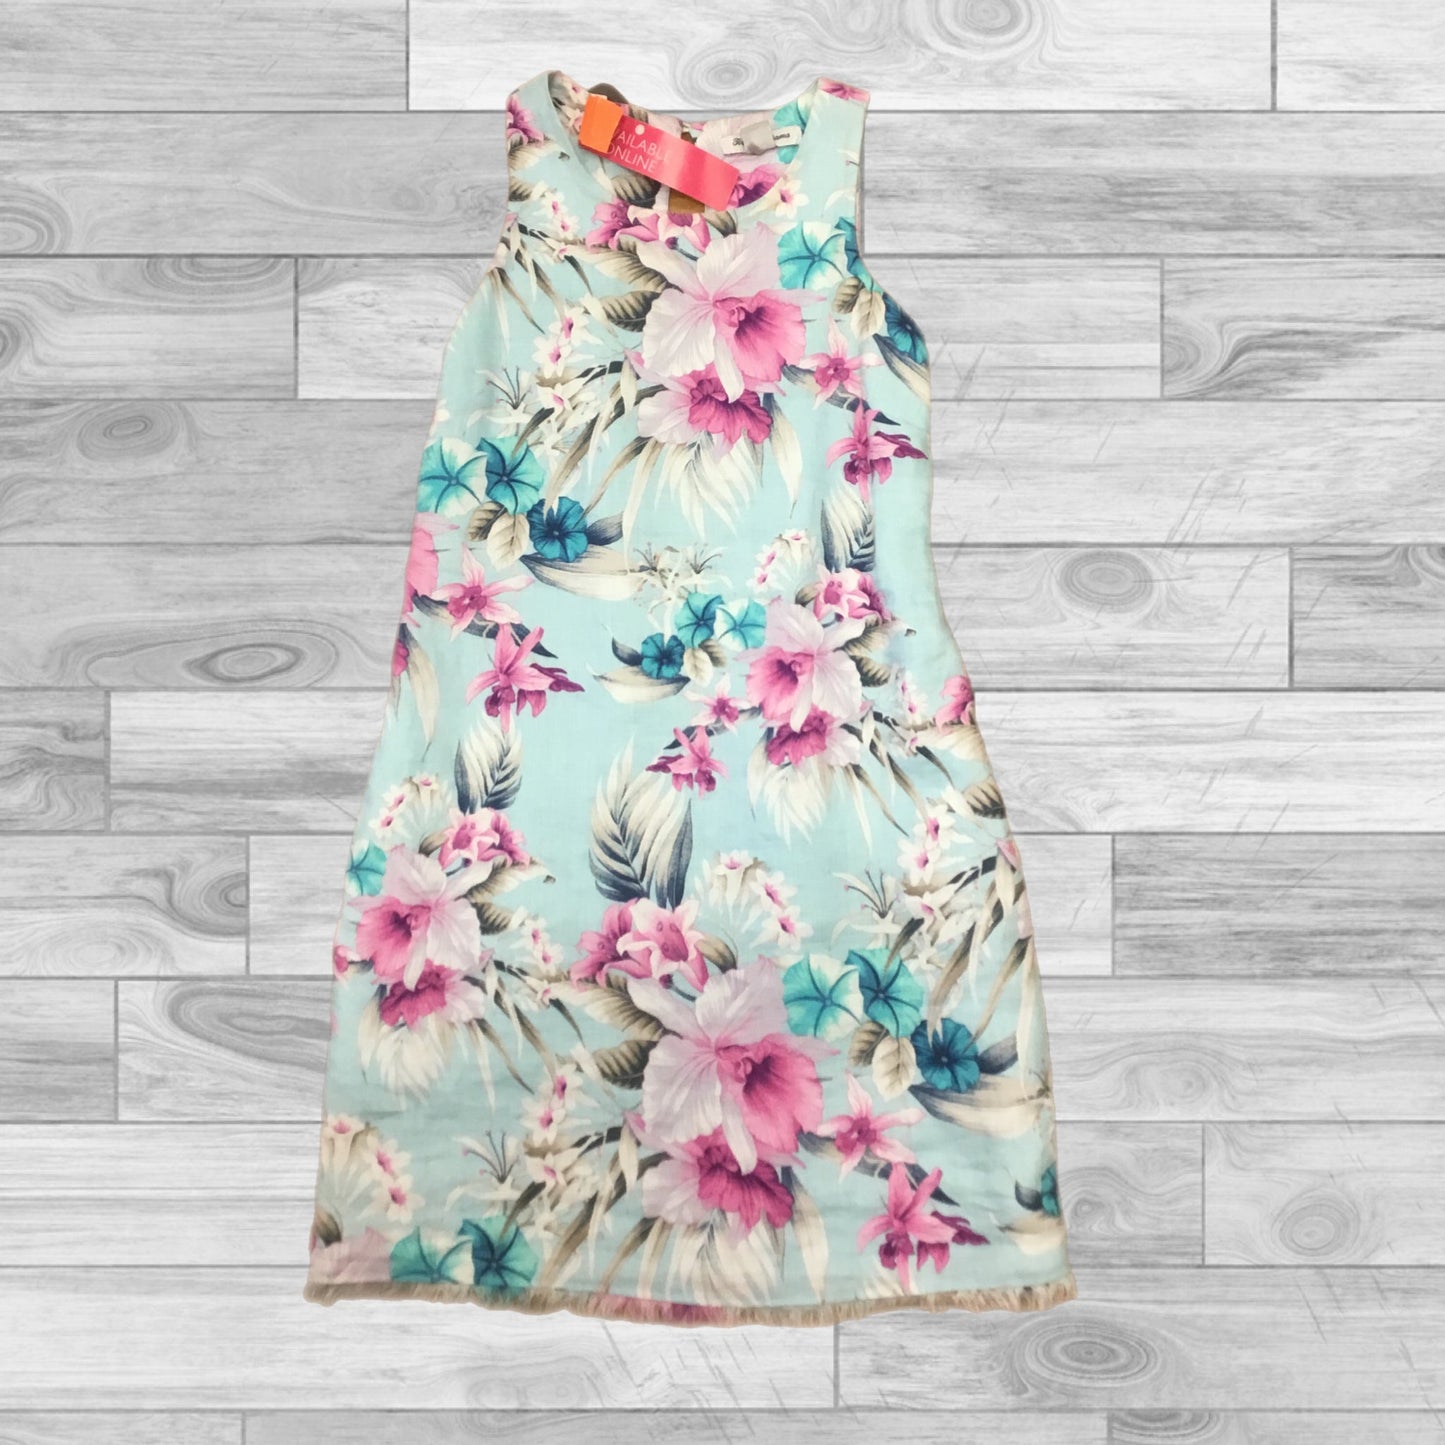 Flowered Dress Casual Midi Tommy Bahama, Size Xxs